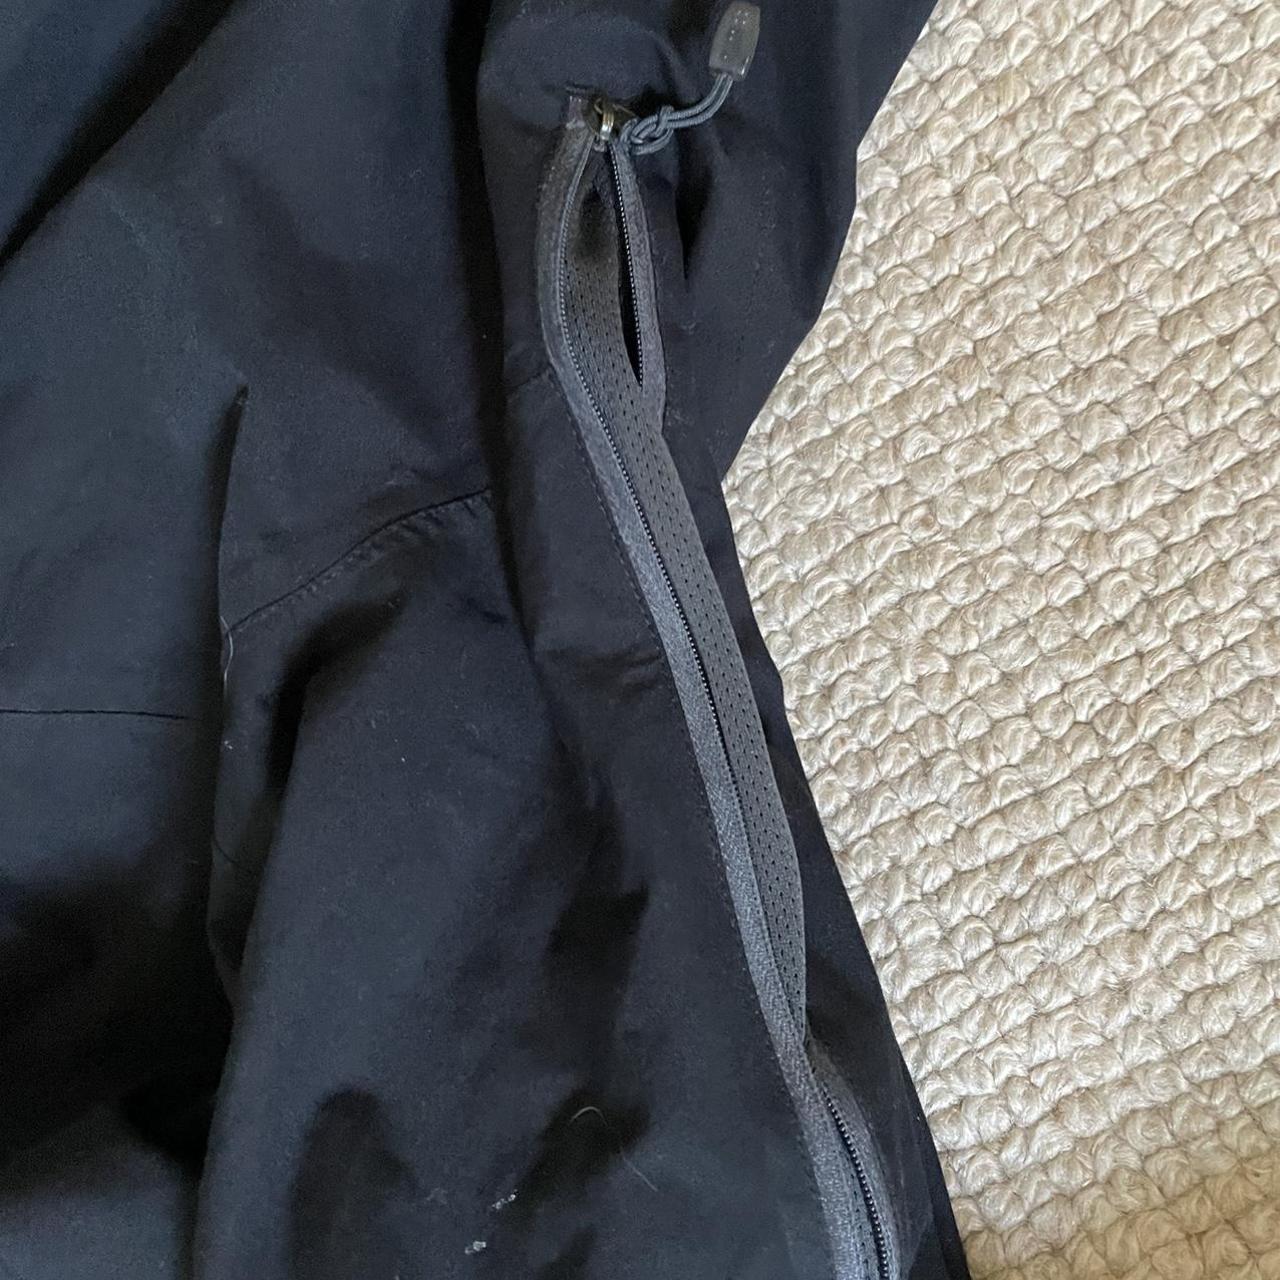 Vintage black Nike acg jacket Upper pocket lining... - Depop